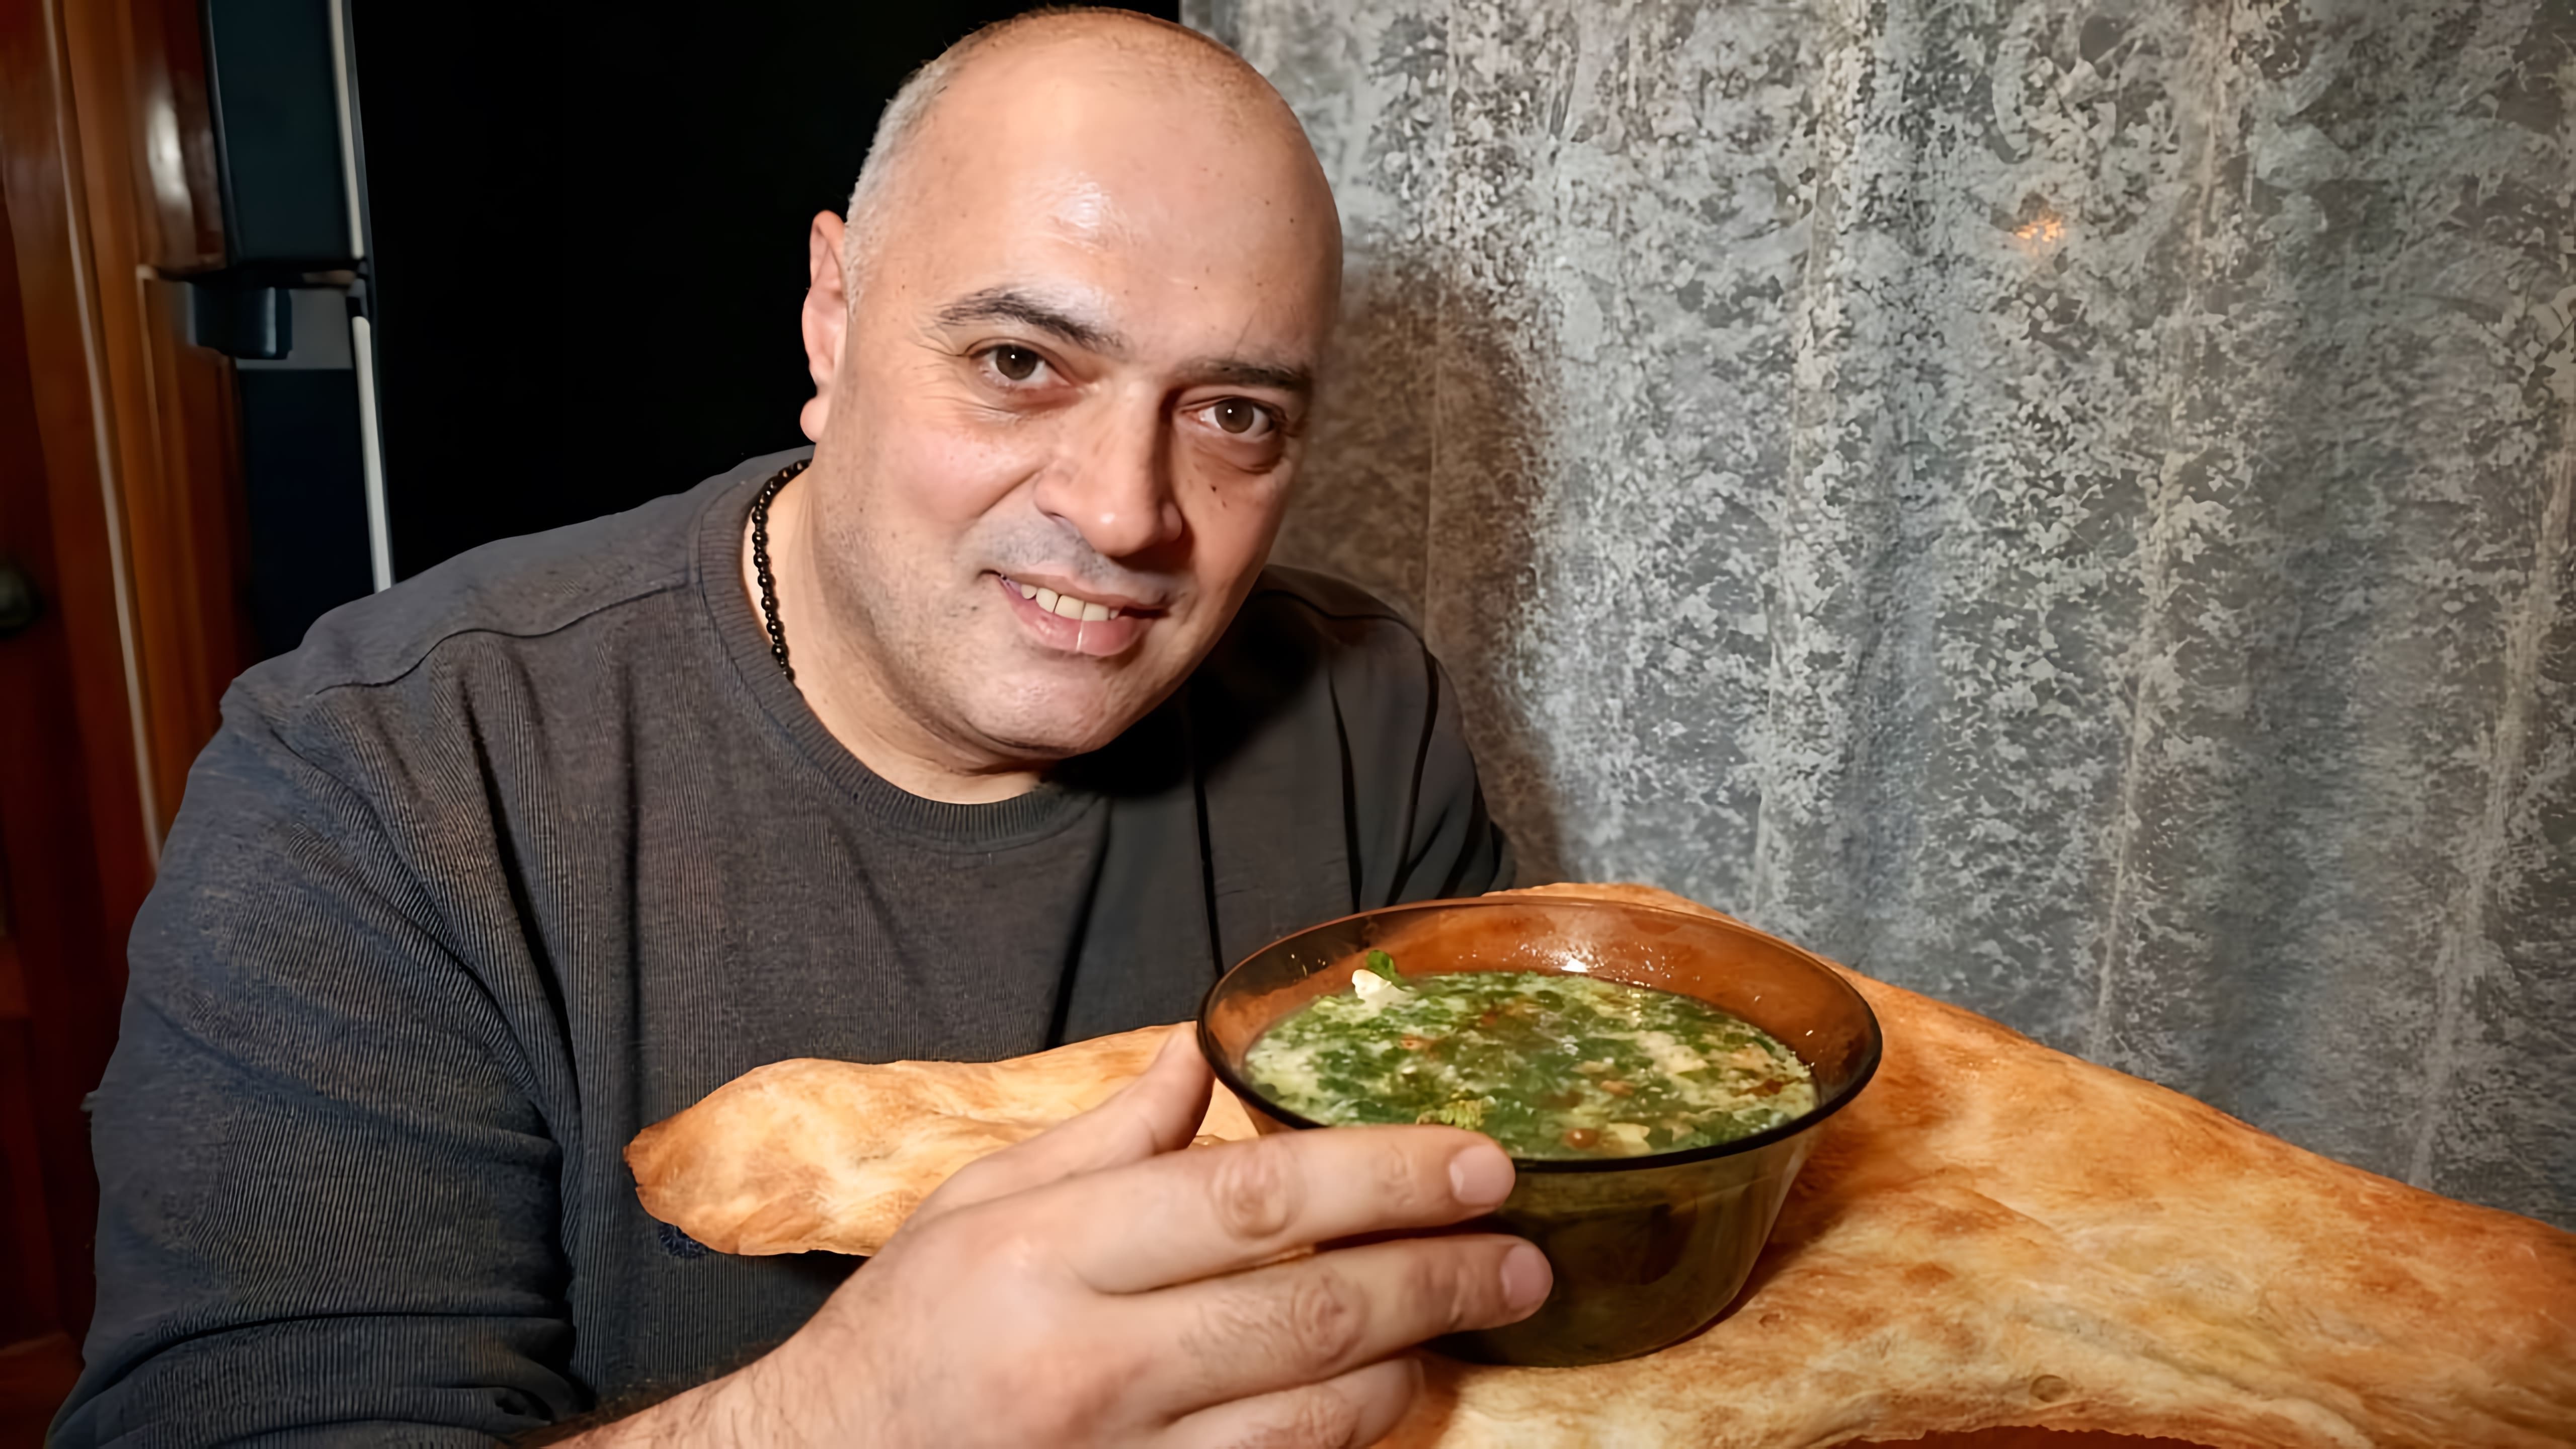 Видео как приготовить куриный суп под названием "чихиртма", который считается номером один среди супов в Грузии